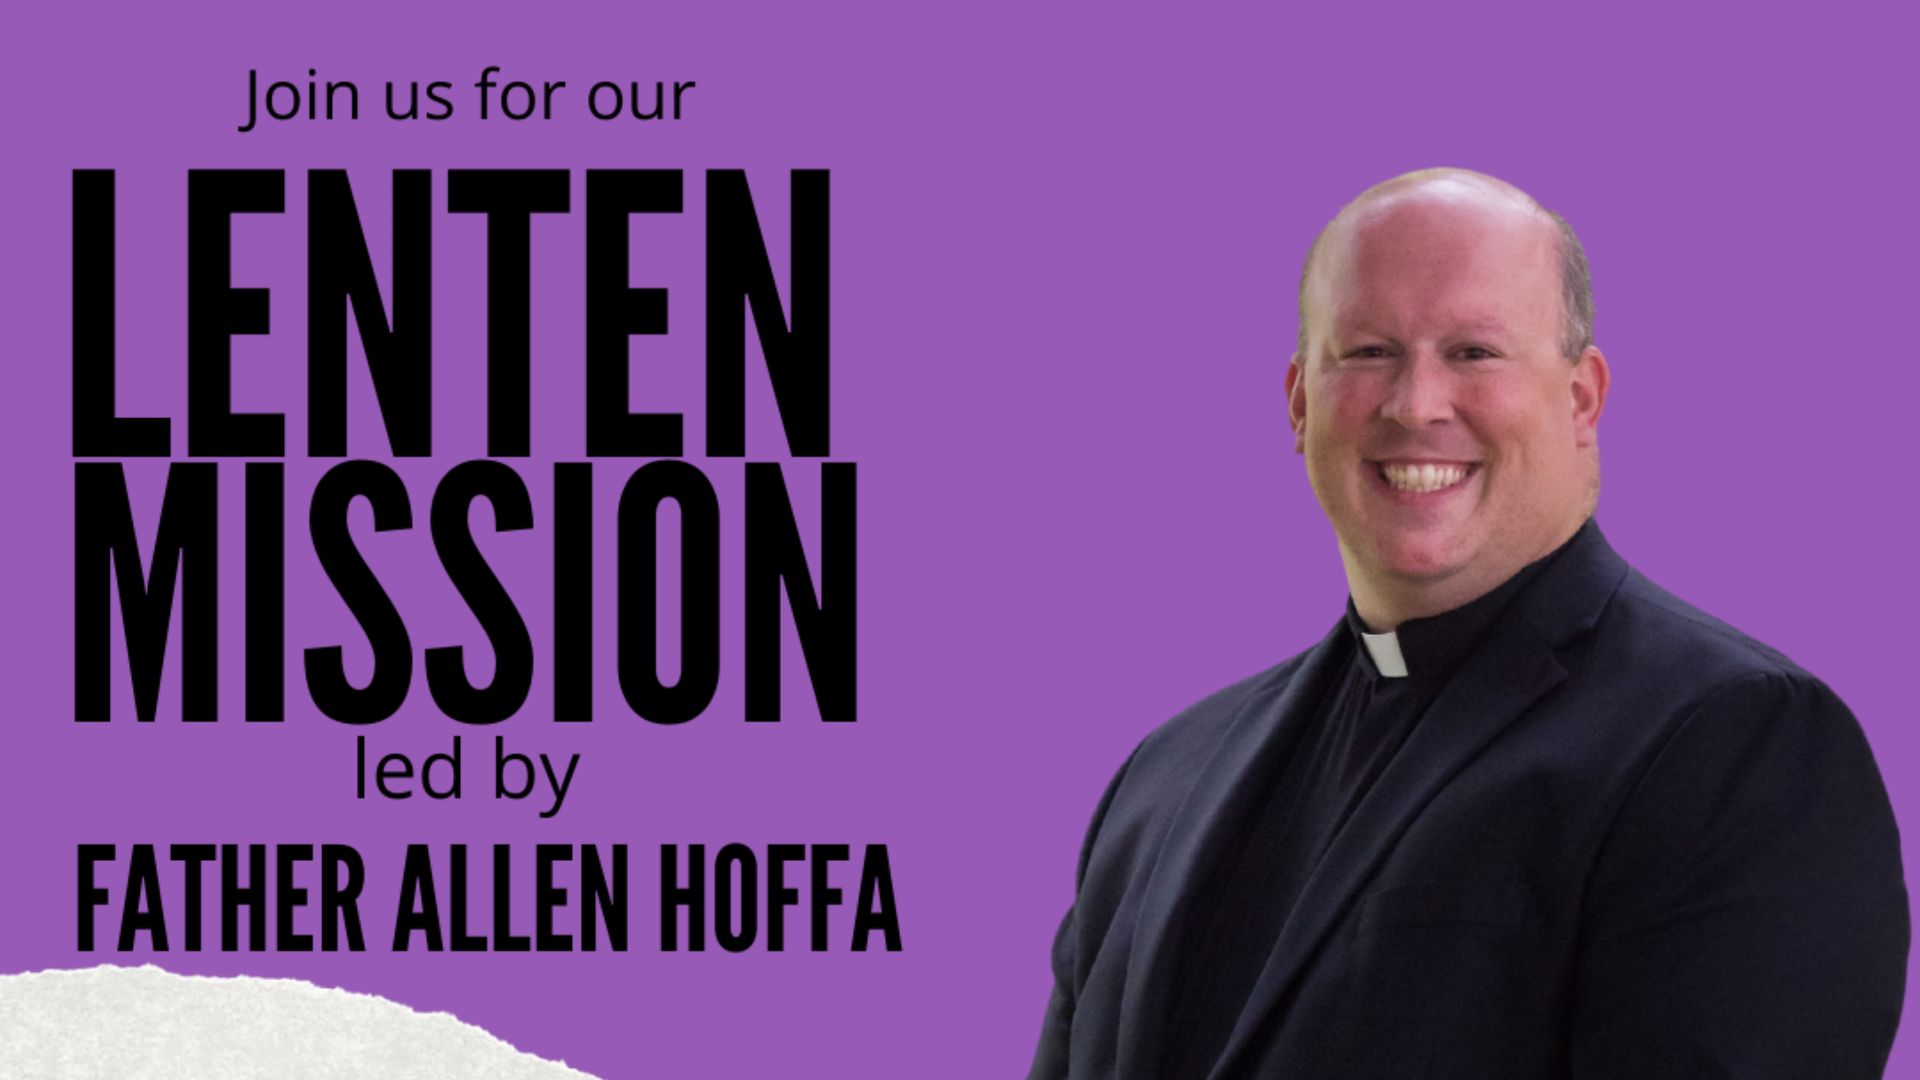 The Lenten Mission